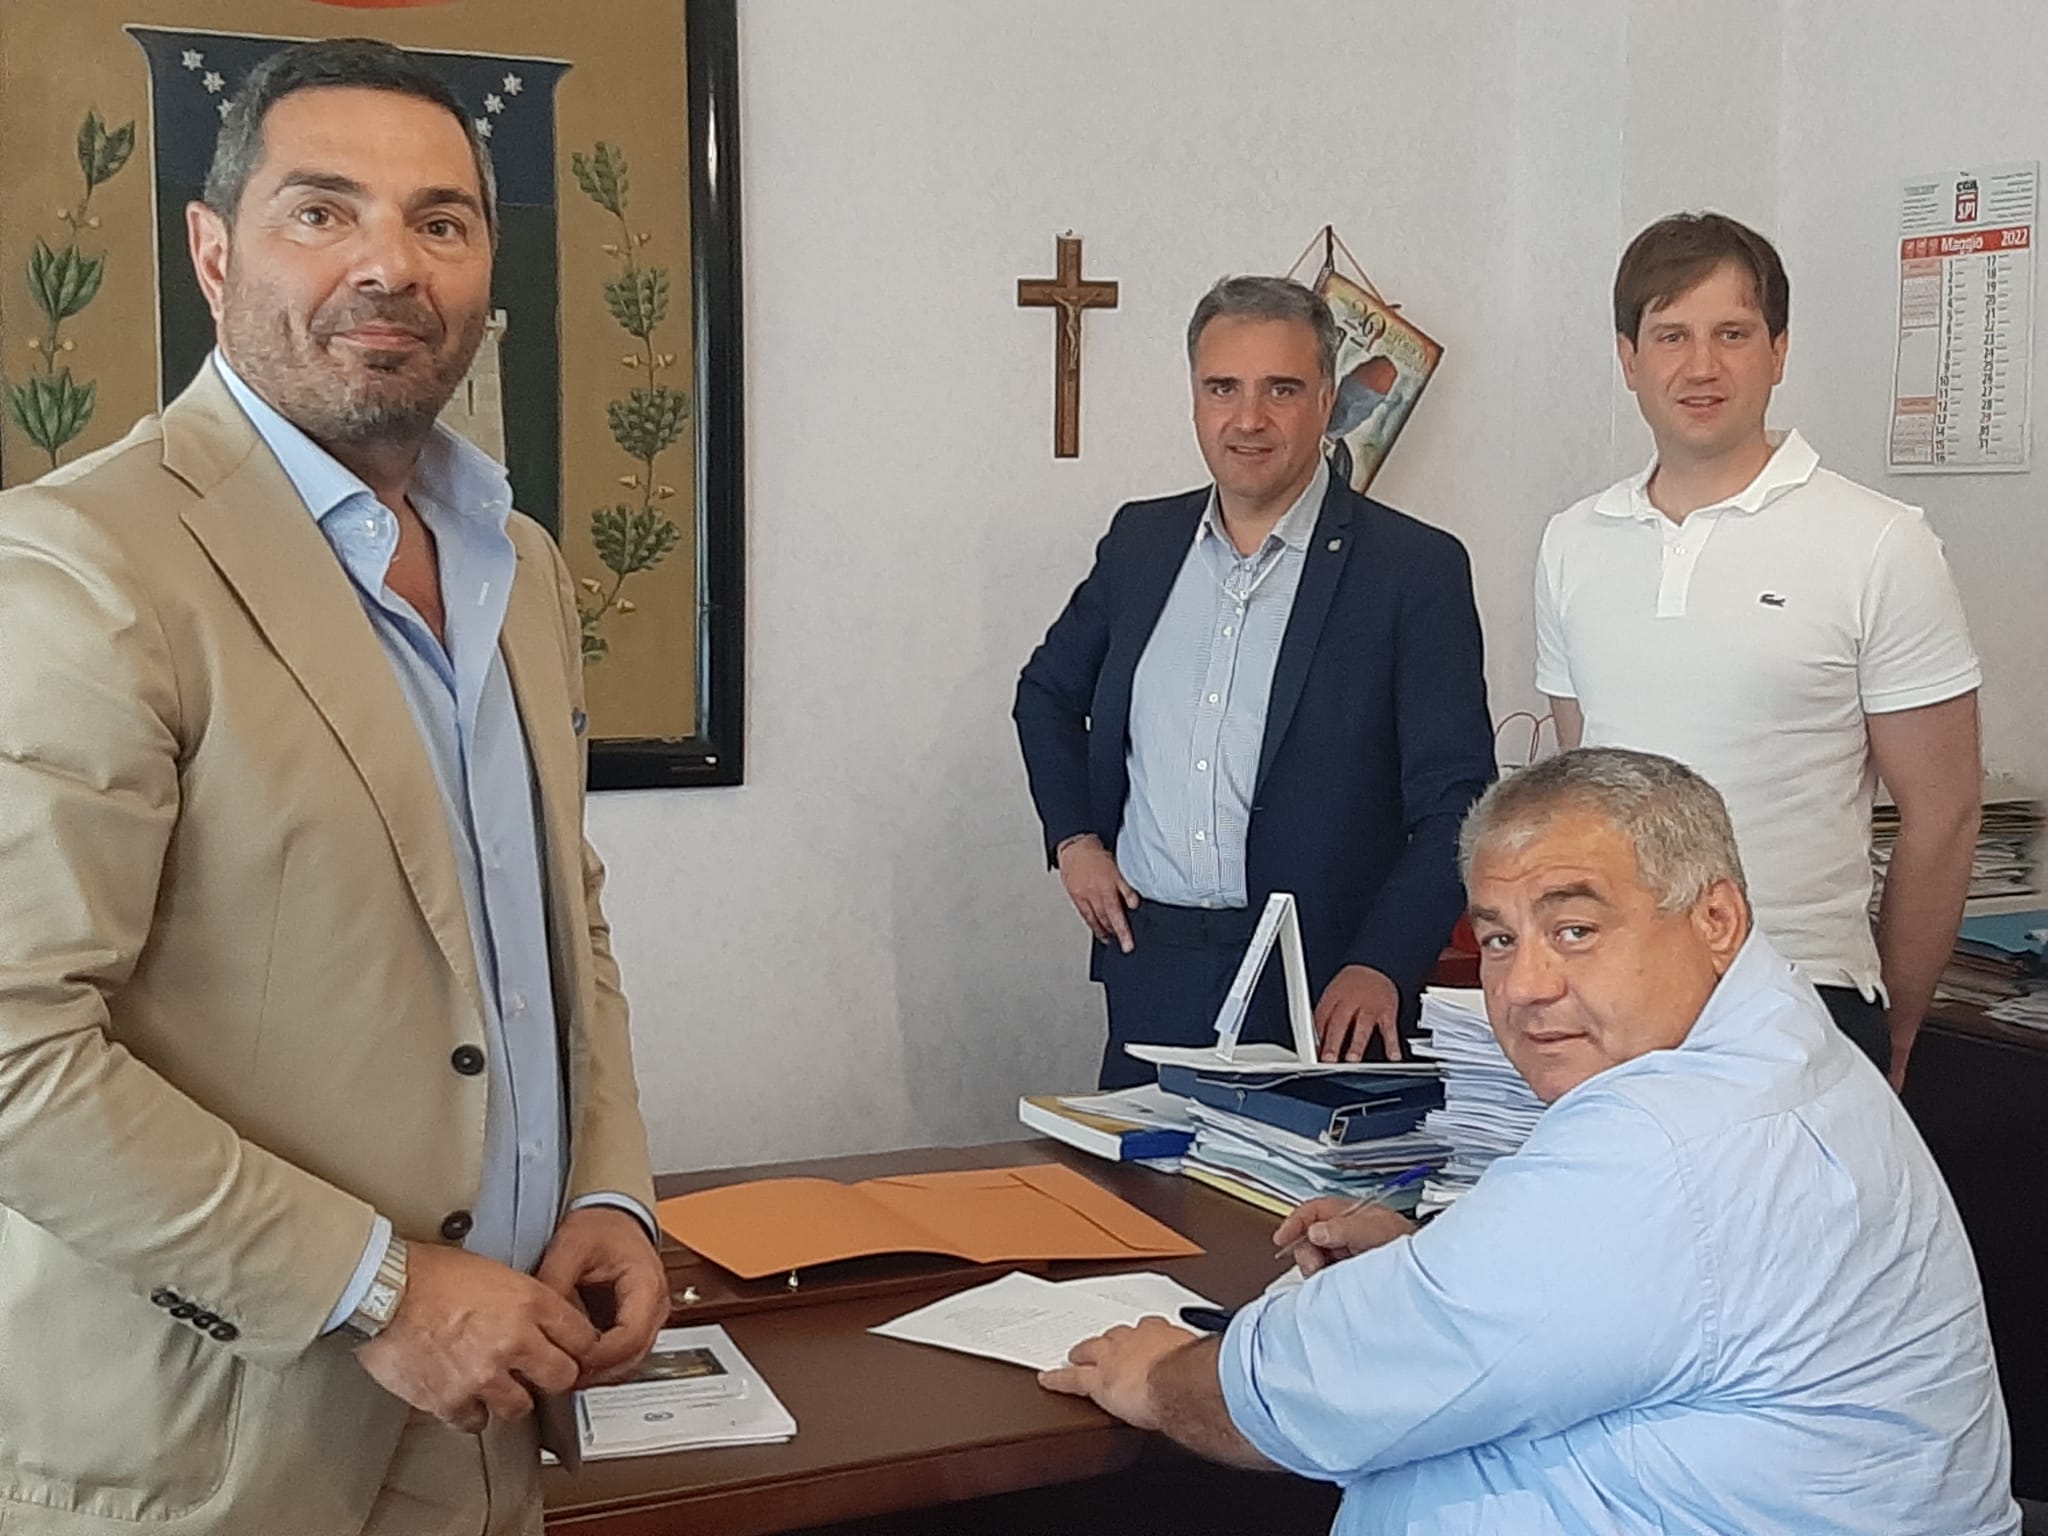 Mussomeli, “firmato contratto per progetto Smart City da 1,7 milioni di euro”